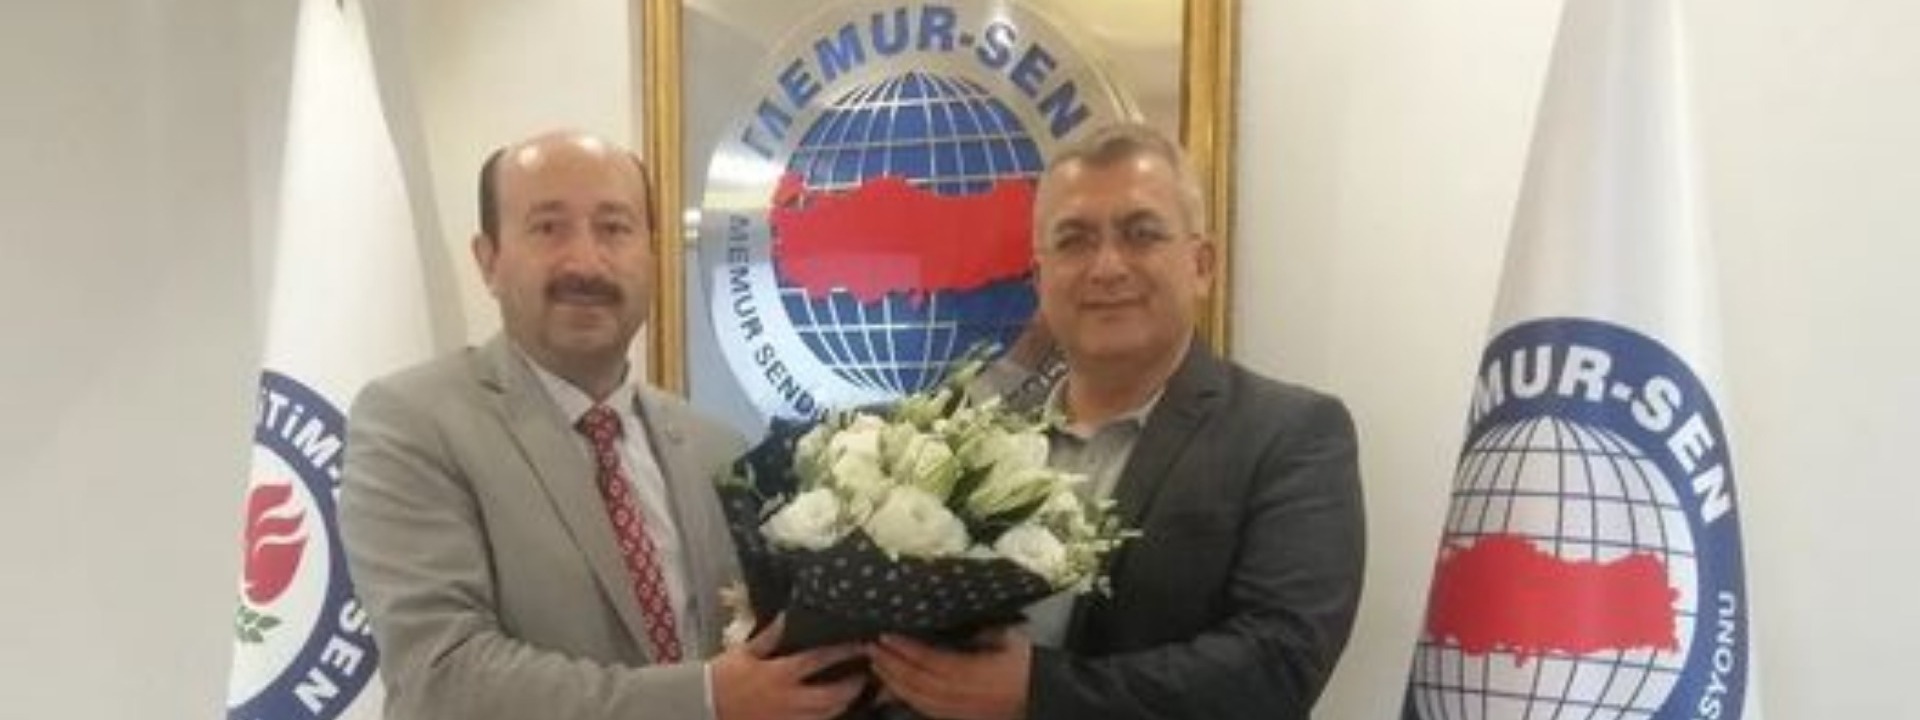 Memur-Sen İzmir Yeni İl Başkanı Gençer Yılmaz Oldu